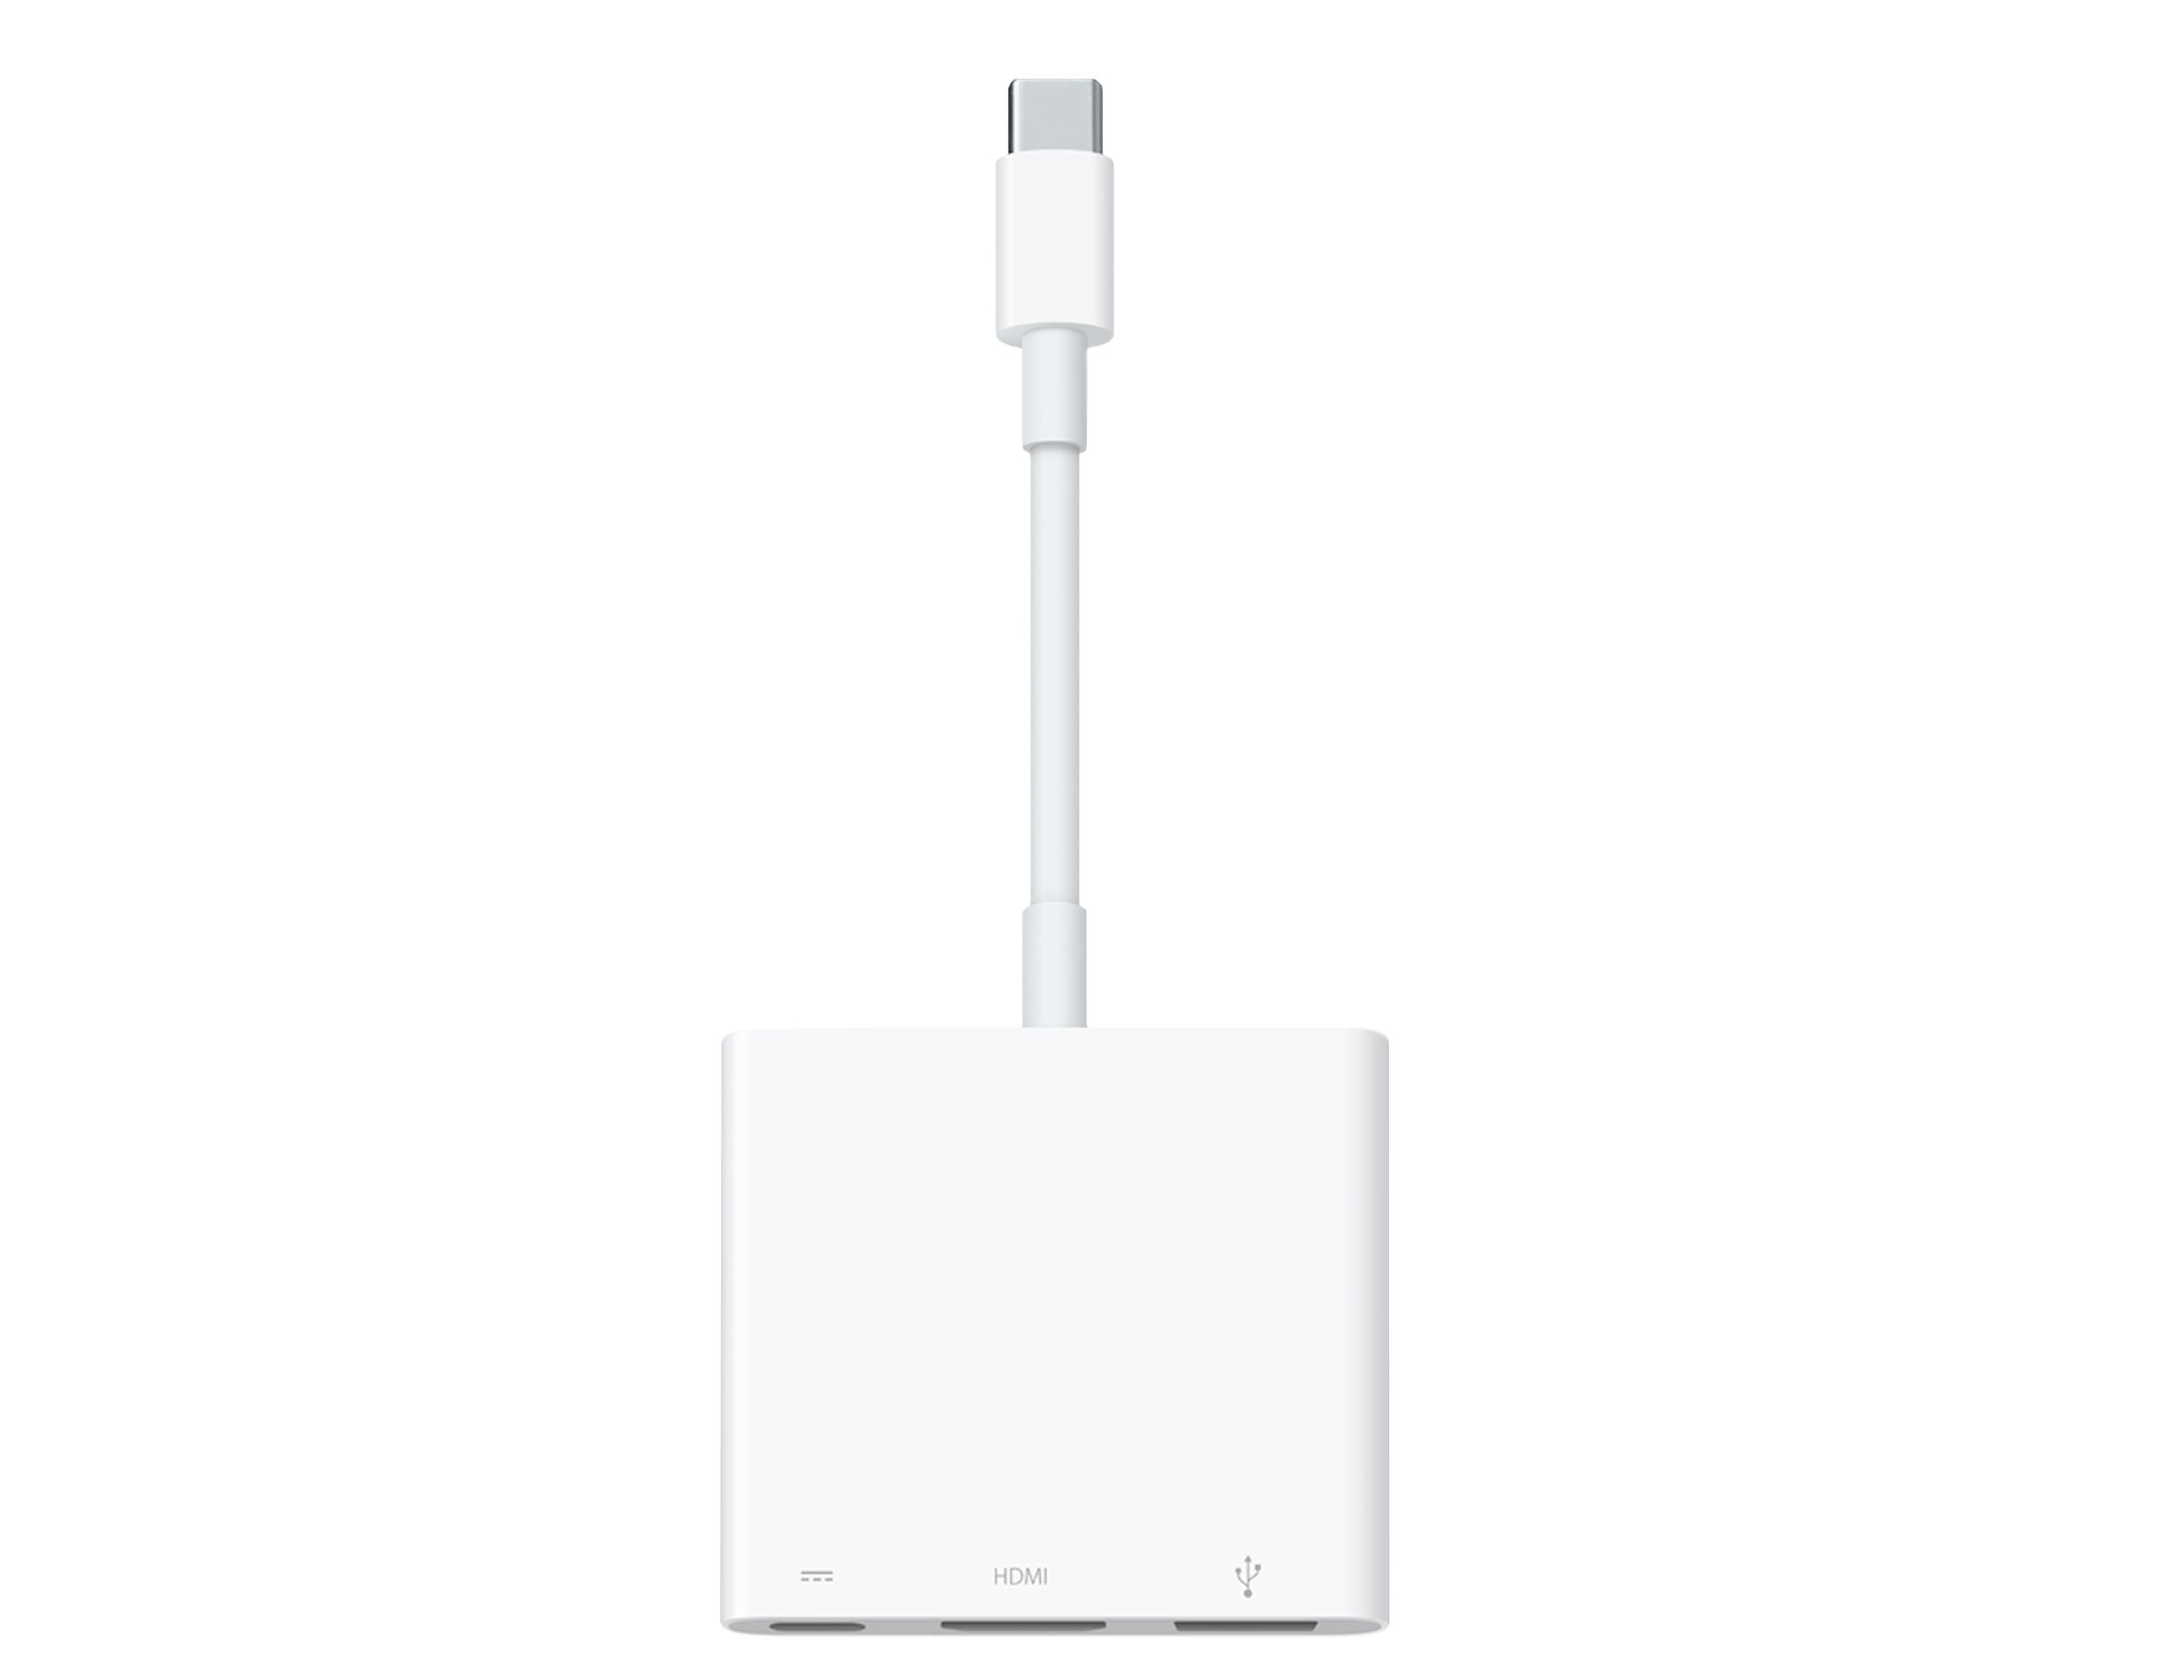 Адаптер apple lightning usb. Apple Lightning to USB Camera Adapter. Переходник Apple USB-C to USB. Адаптер Apple md821. Адаптер Lightning/USB 3 для подключения камеры (mk0w2zm/a).